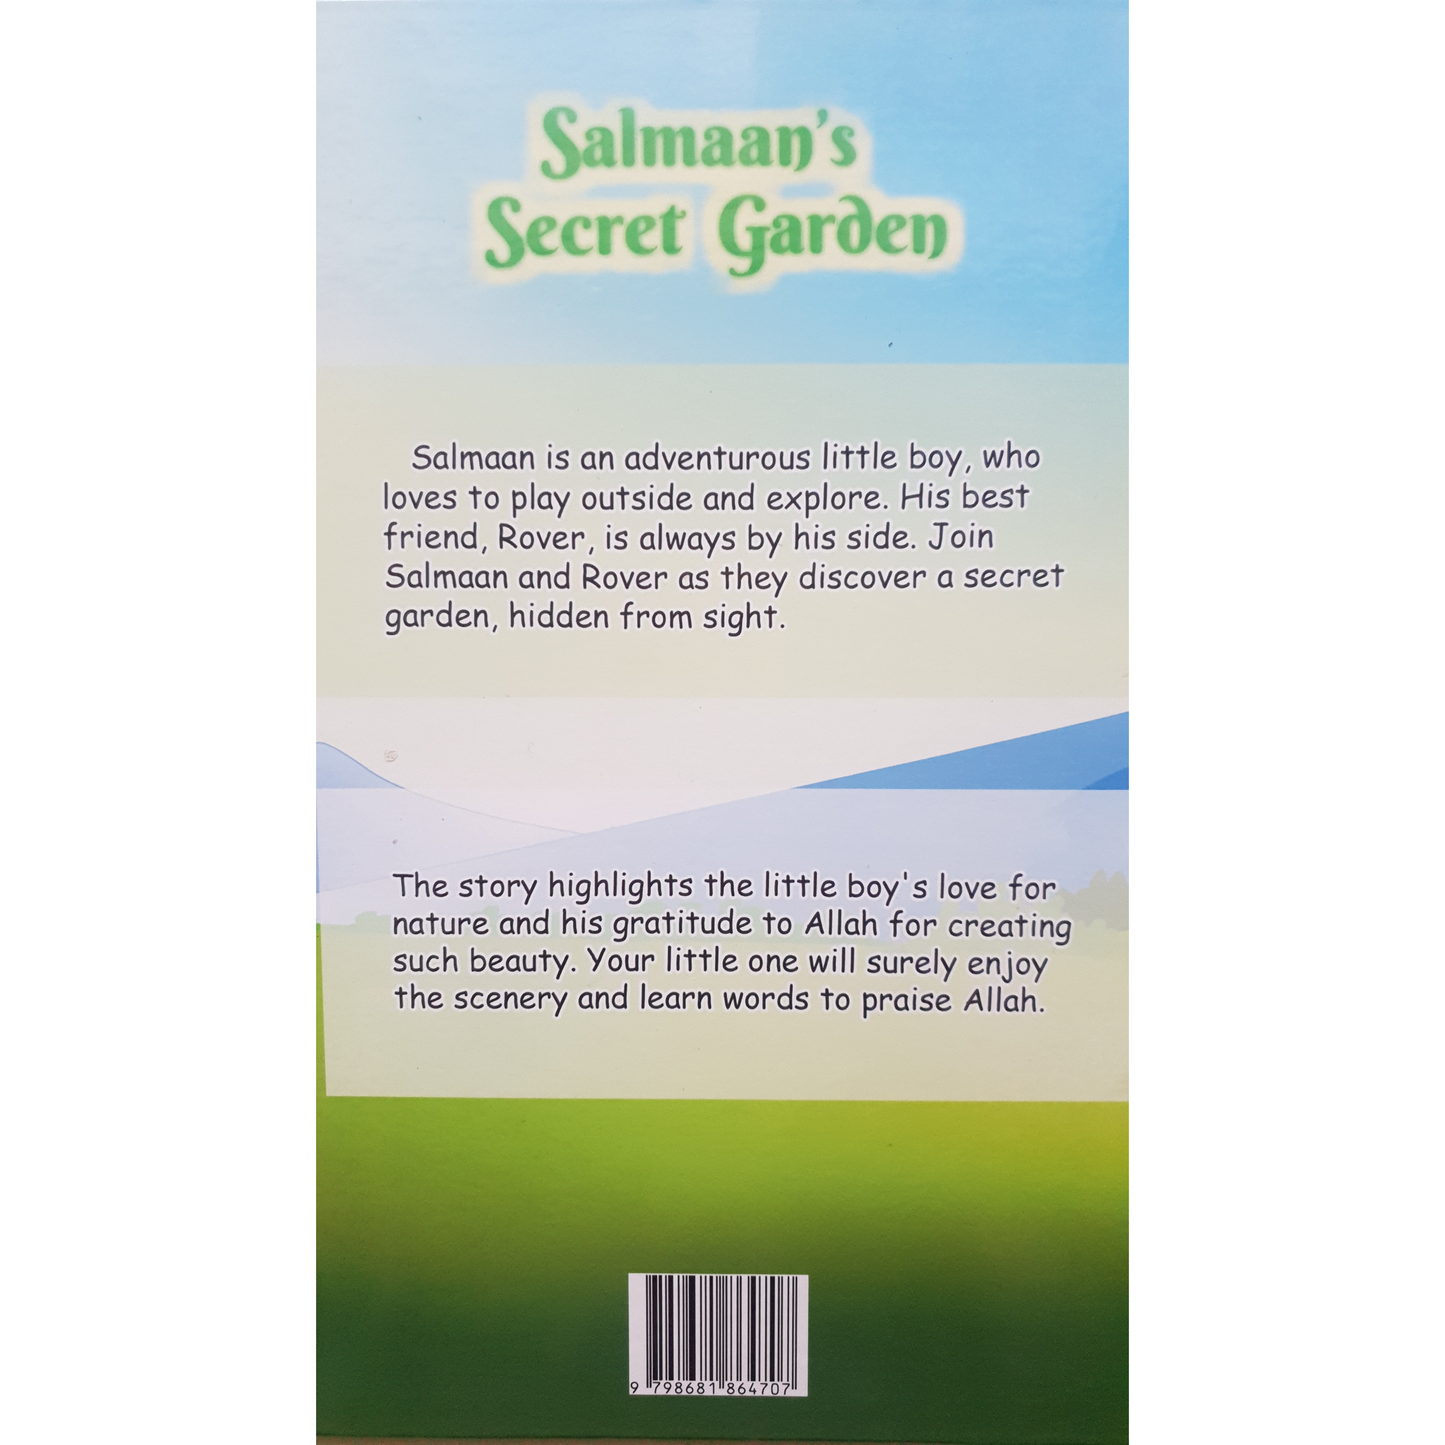 Salmaan's Secret Garden